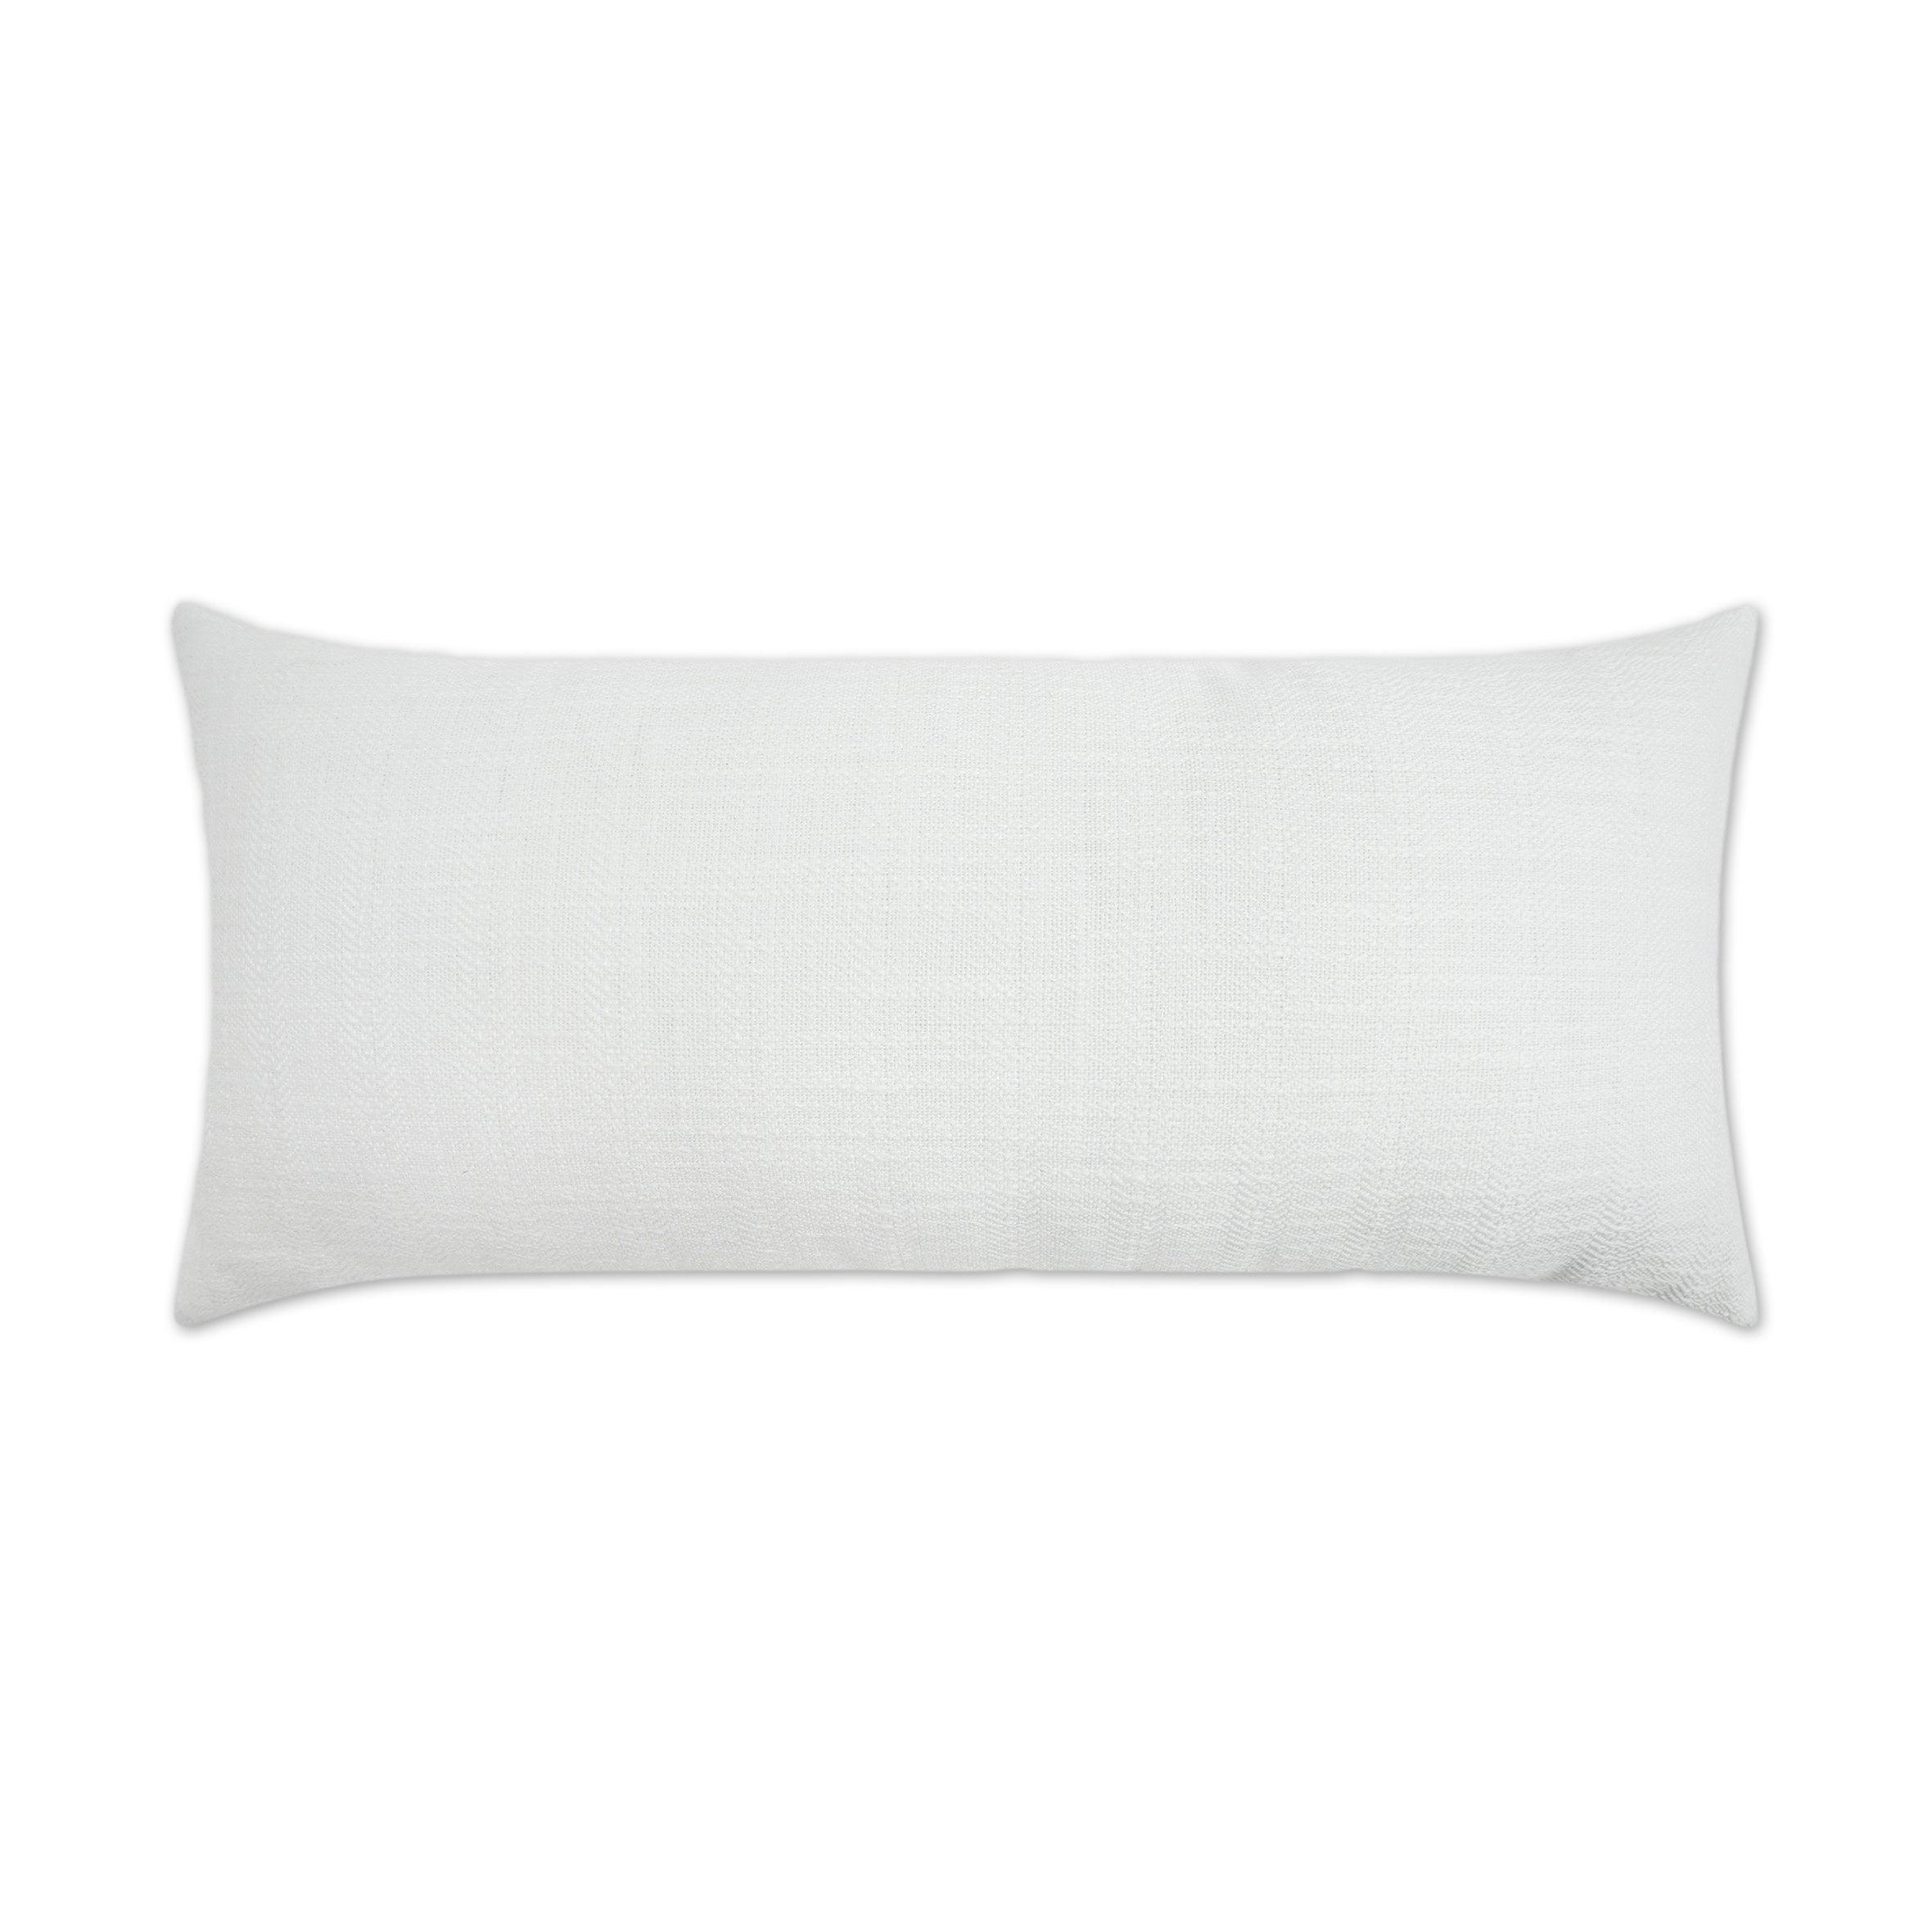 LOOMLAN Outdoor - Outdoor Ashmolton Lumbar Pillow - White - Outdoor Pillows